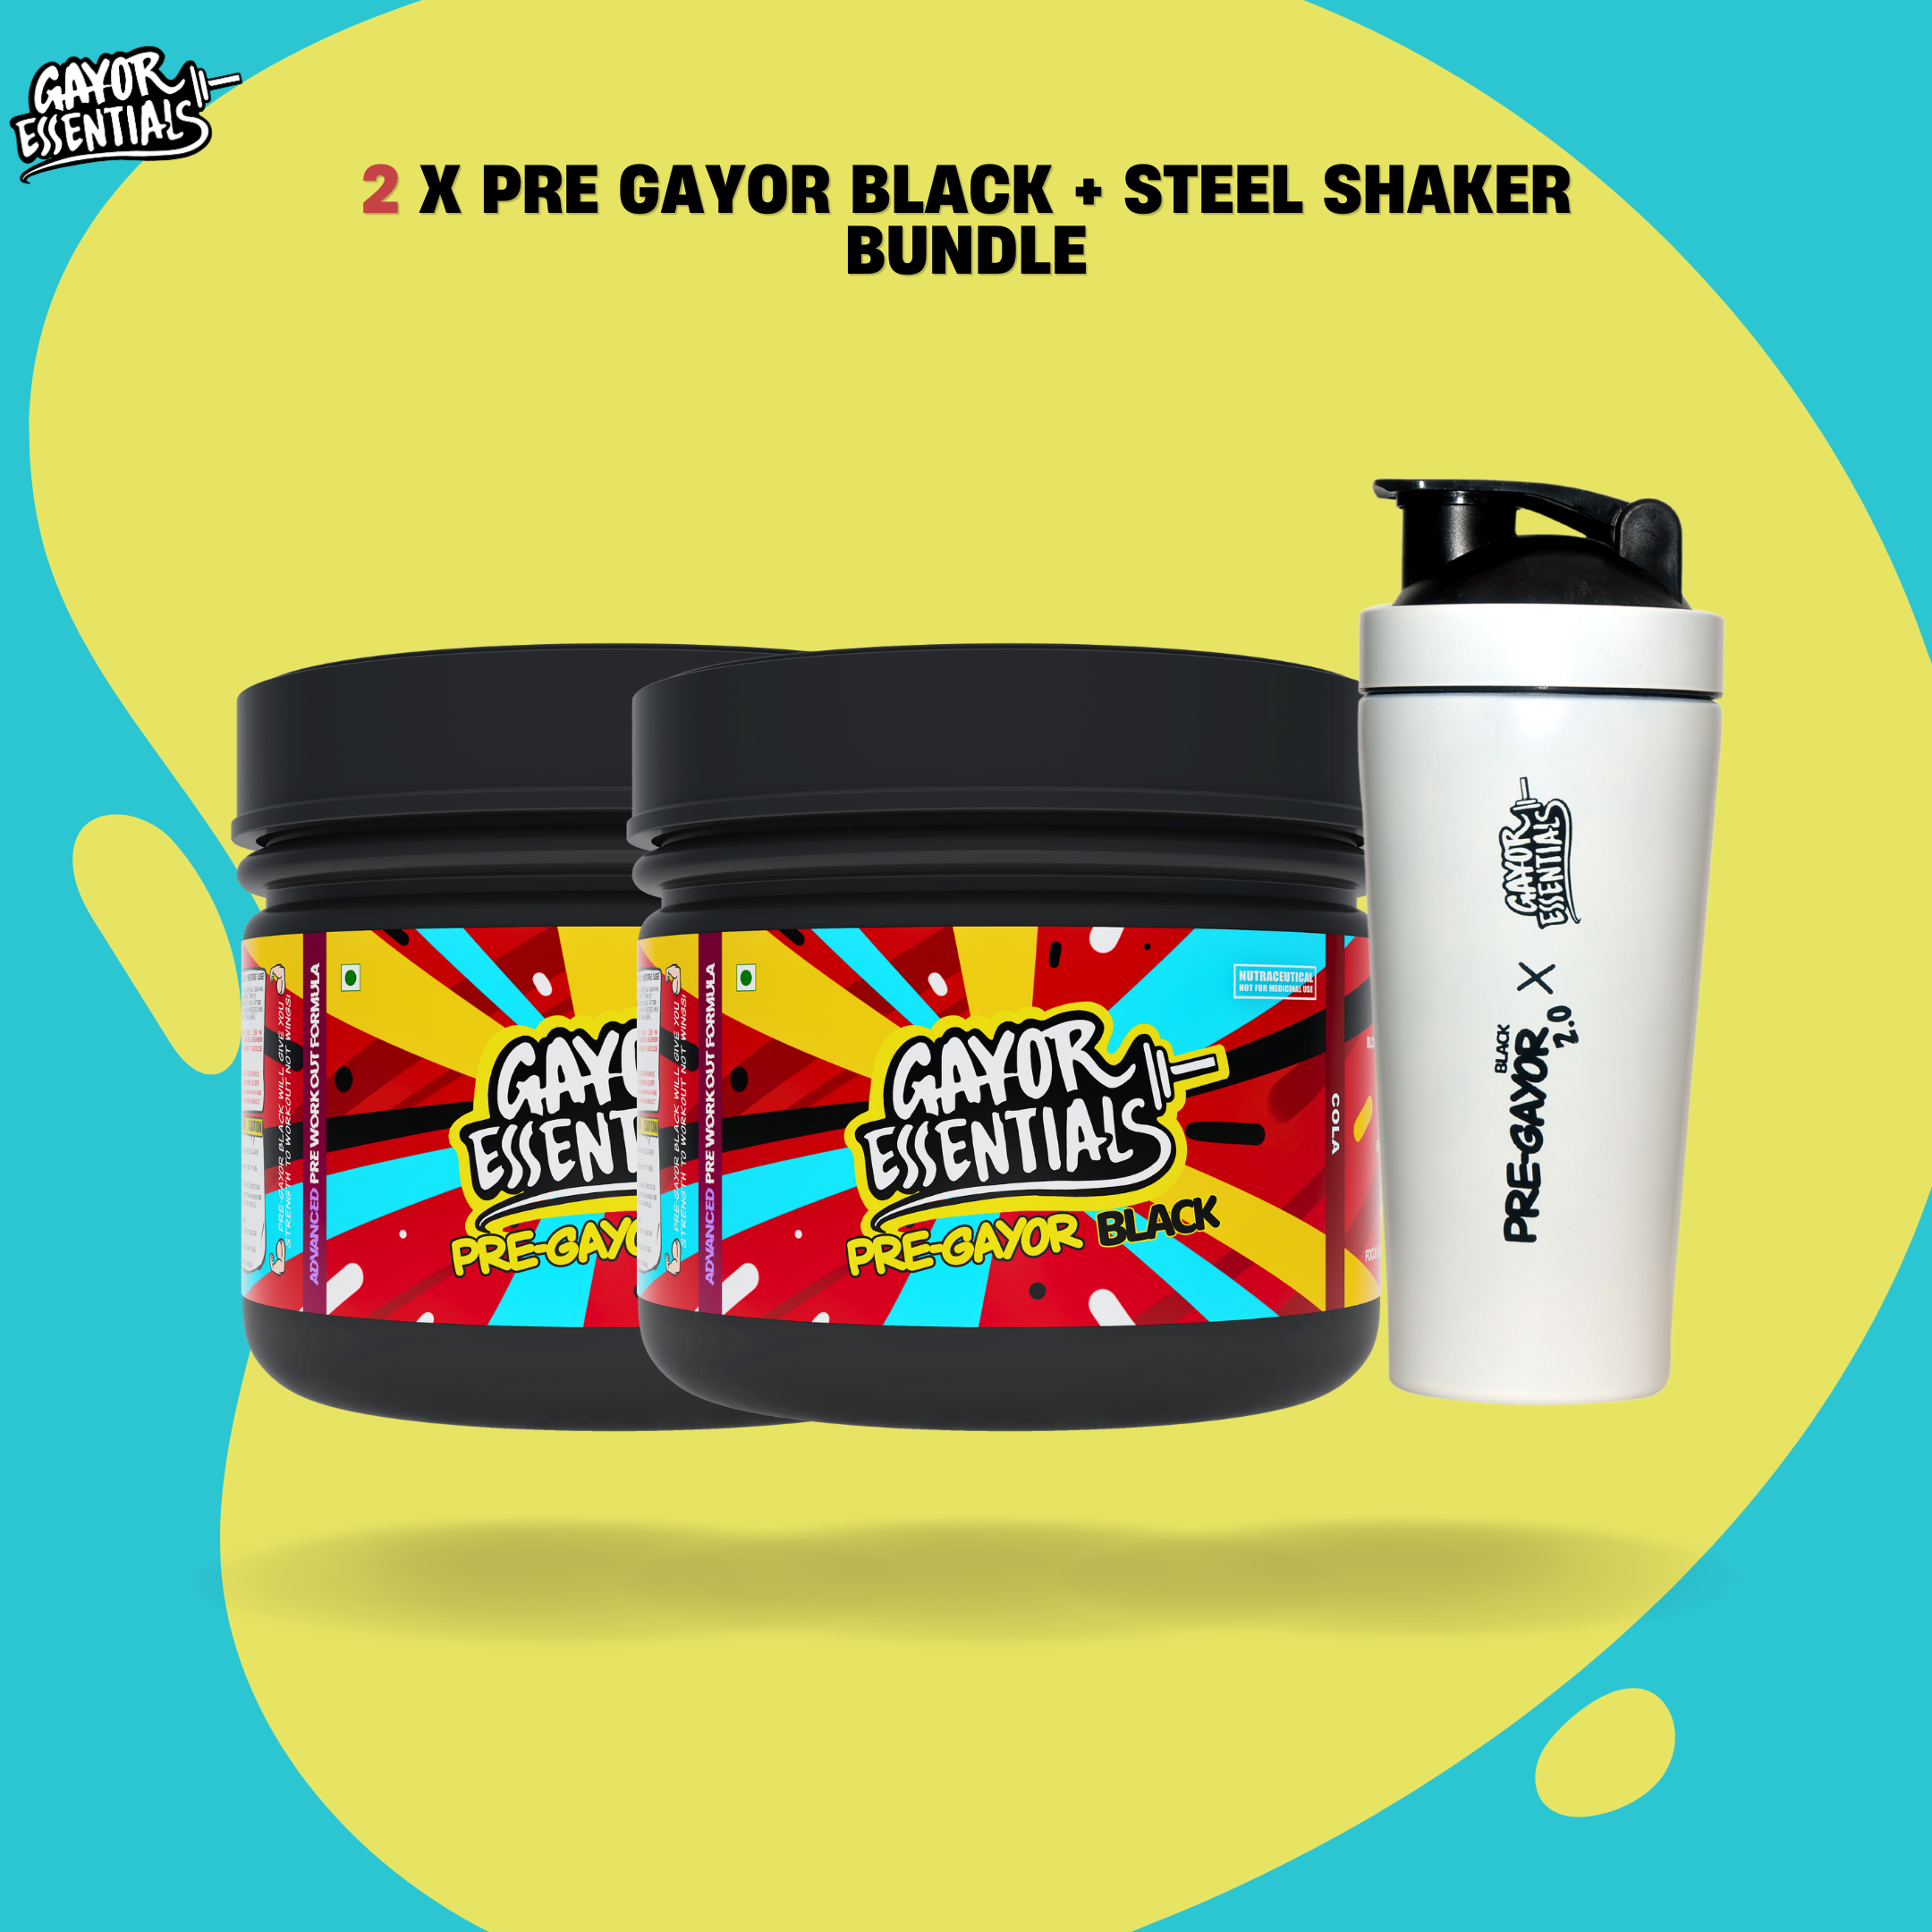 2 x Pre Gayor Black + Steel Shaker Bundle